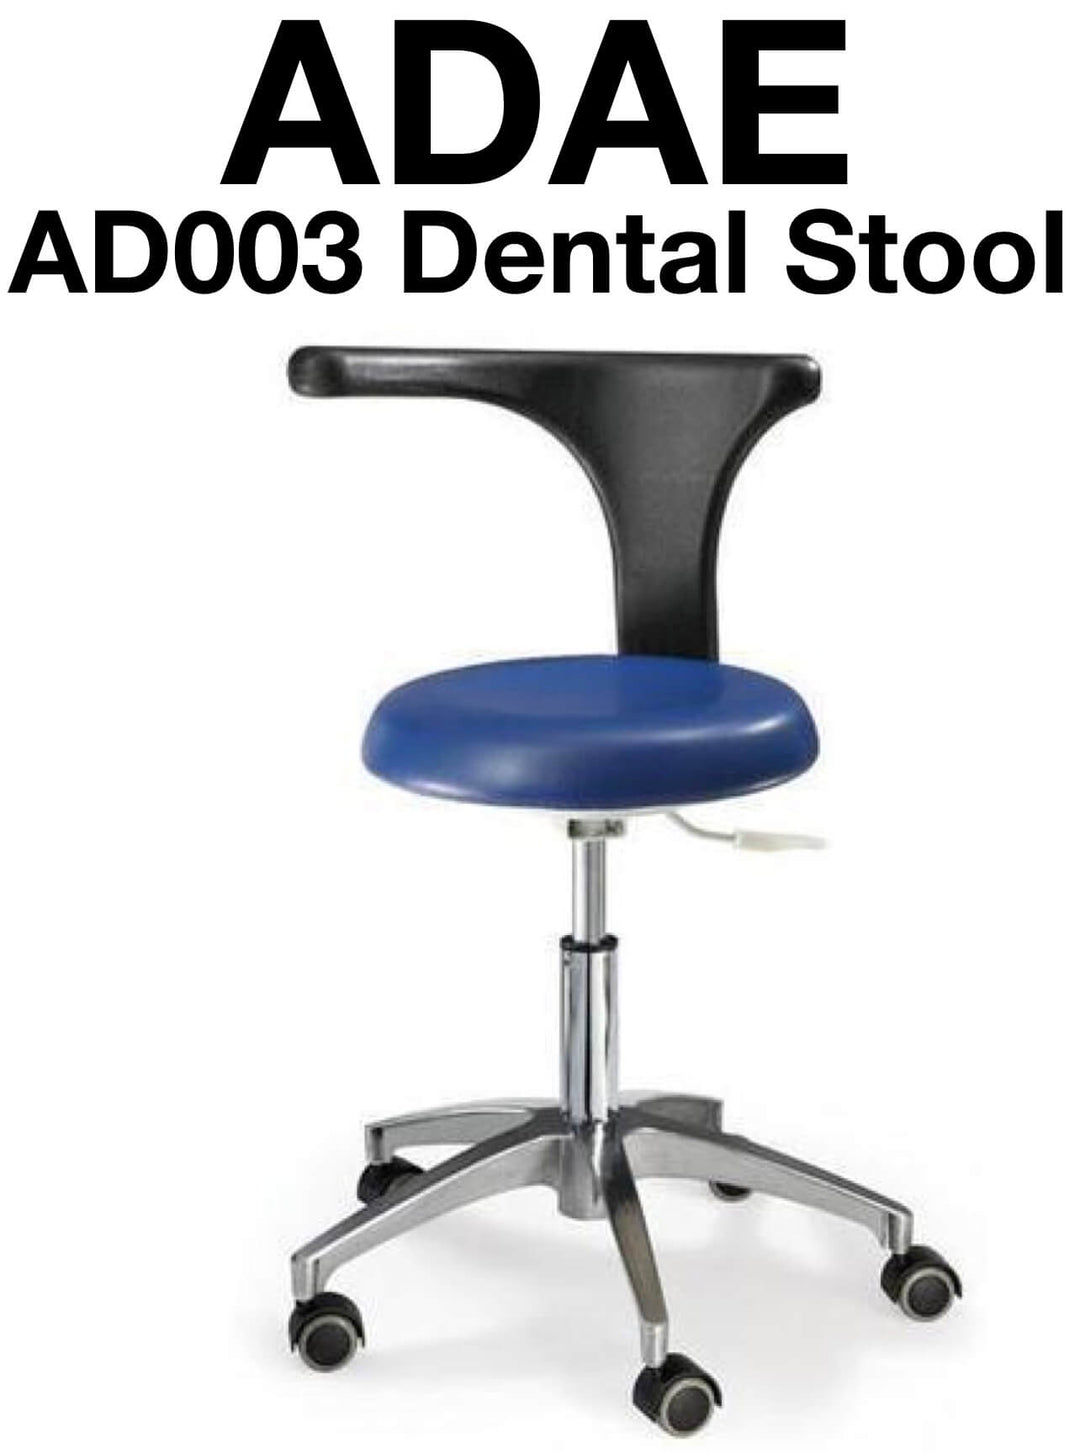 ADAE AD003 dental stool - ADAE Dental Online Store